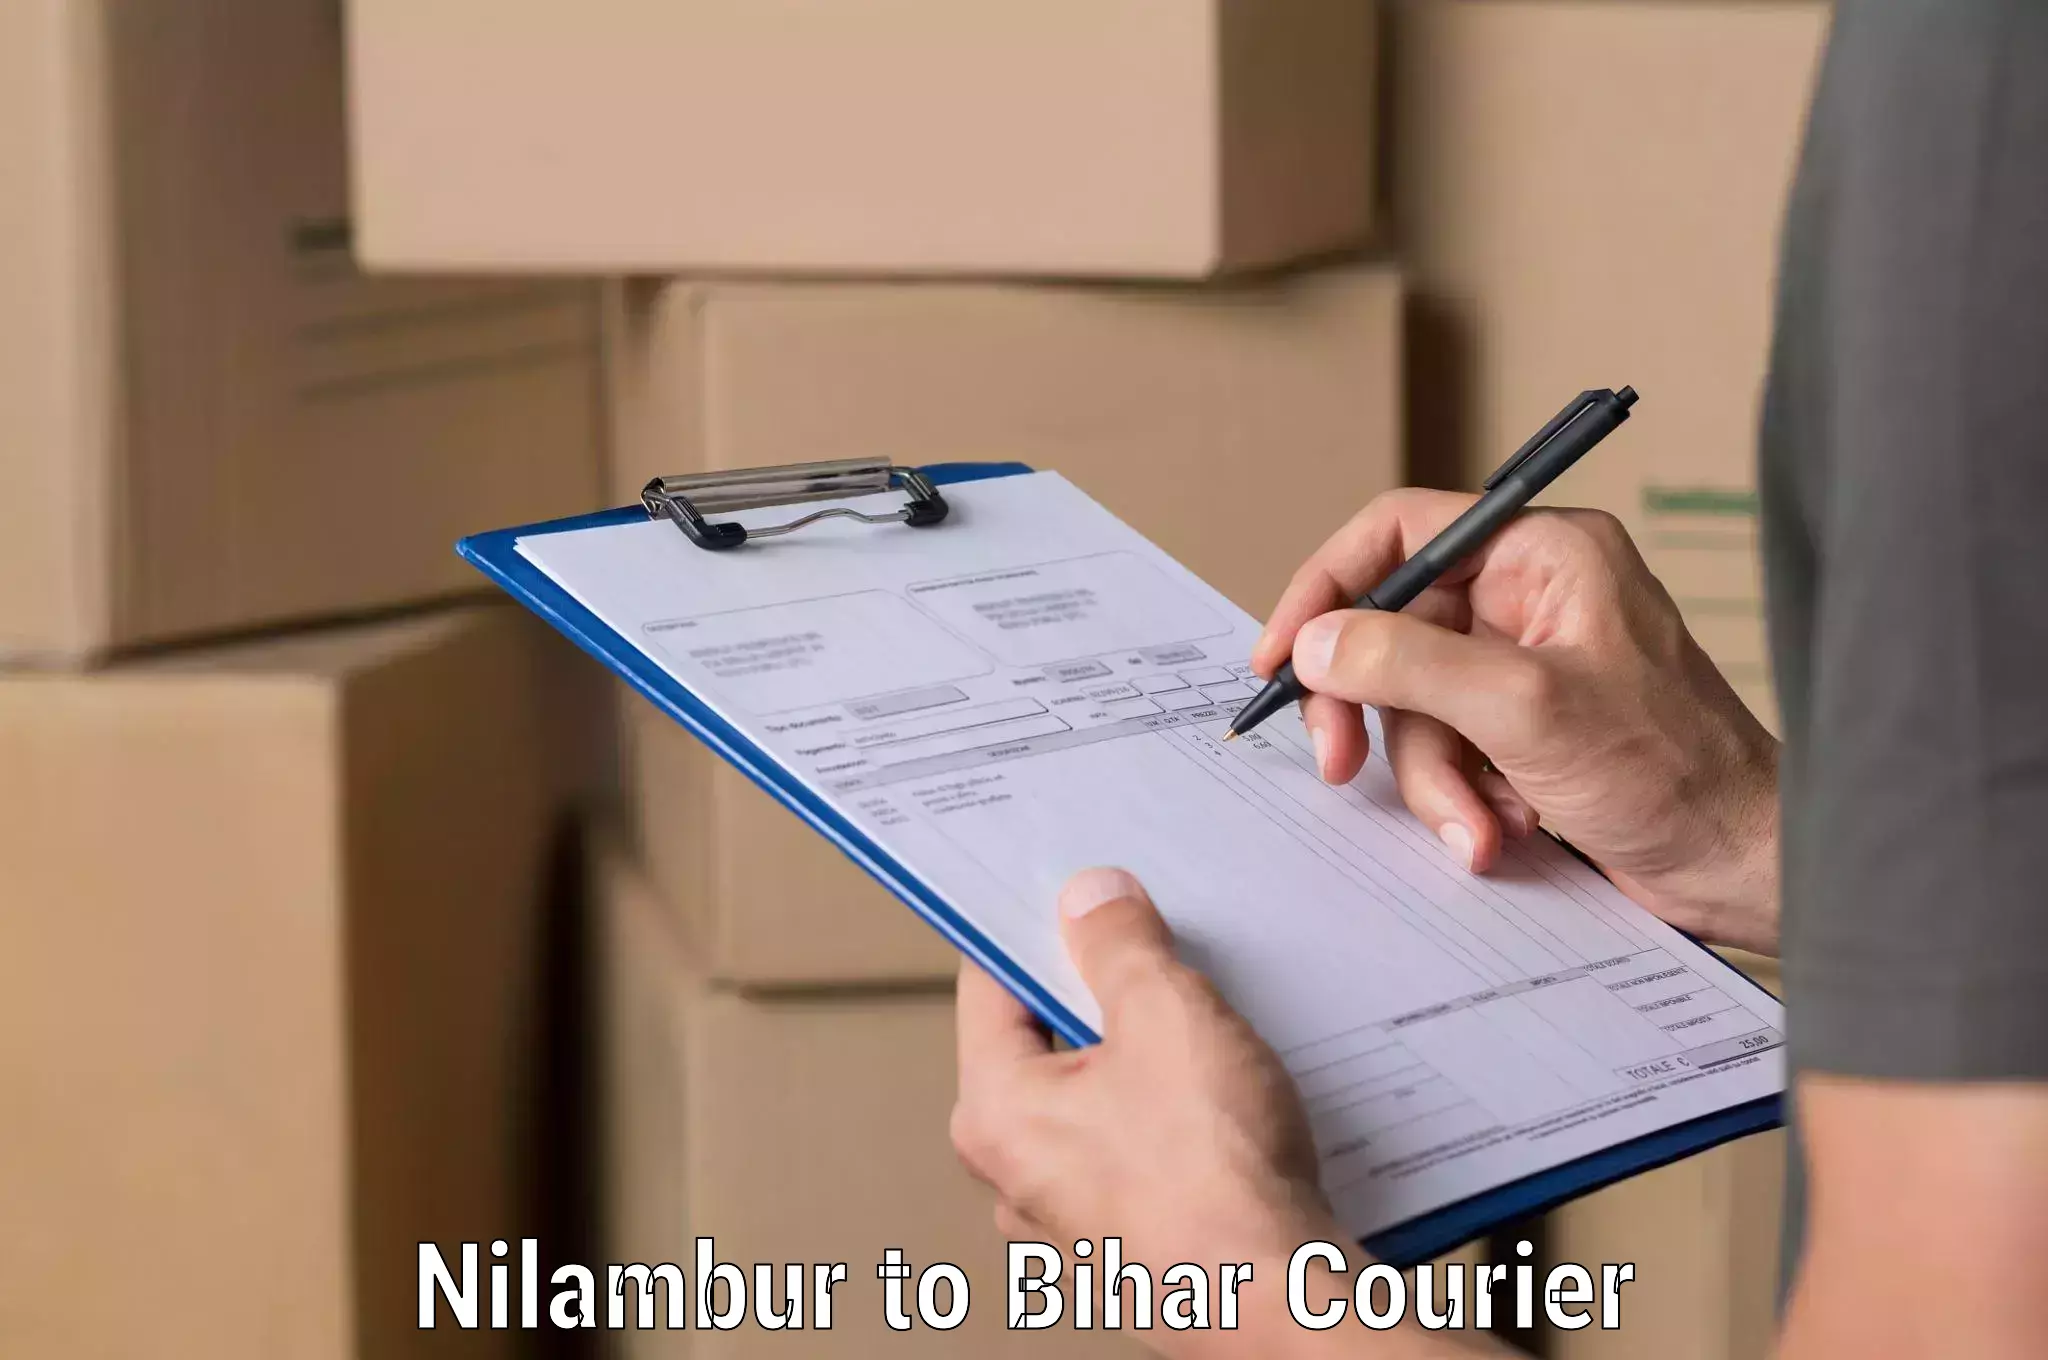 Cash on delivery service Nilambur to Benipatti